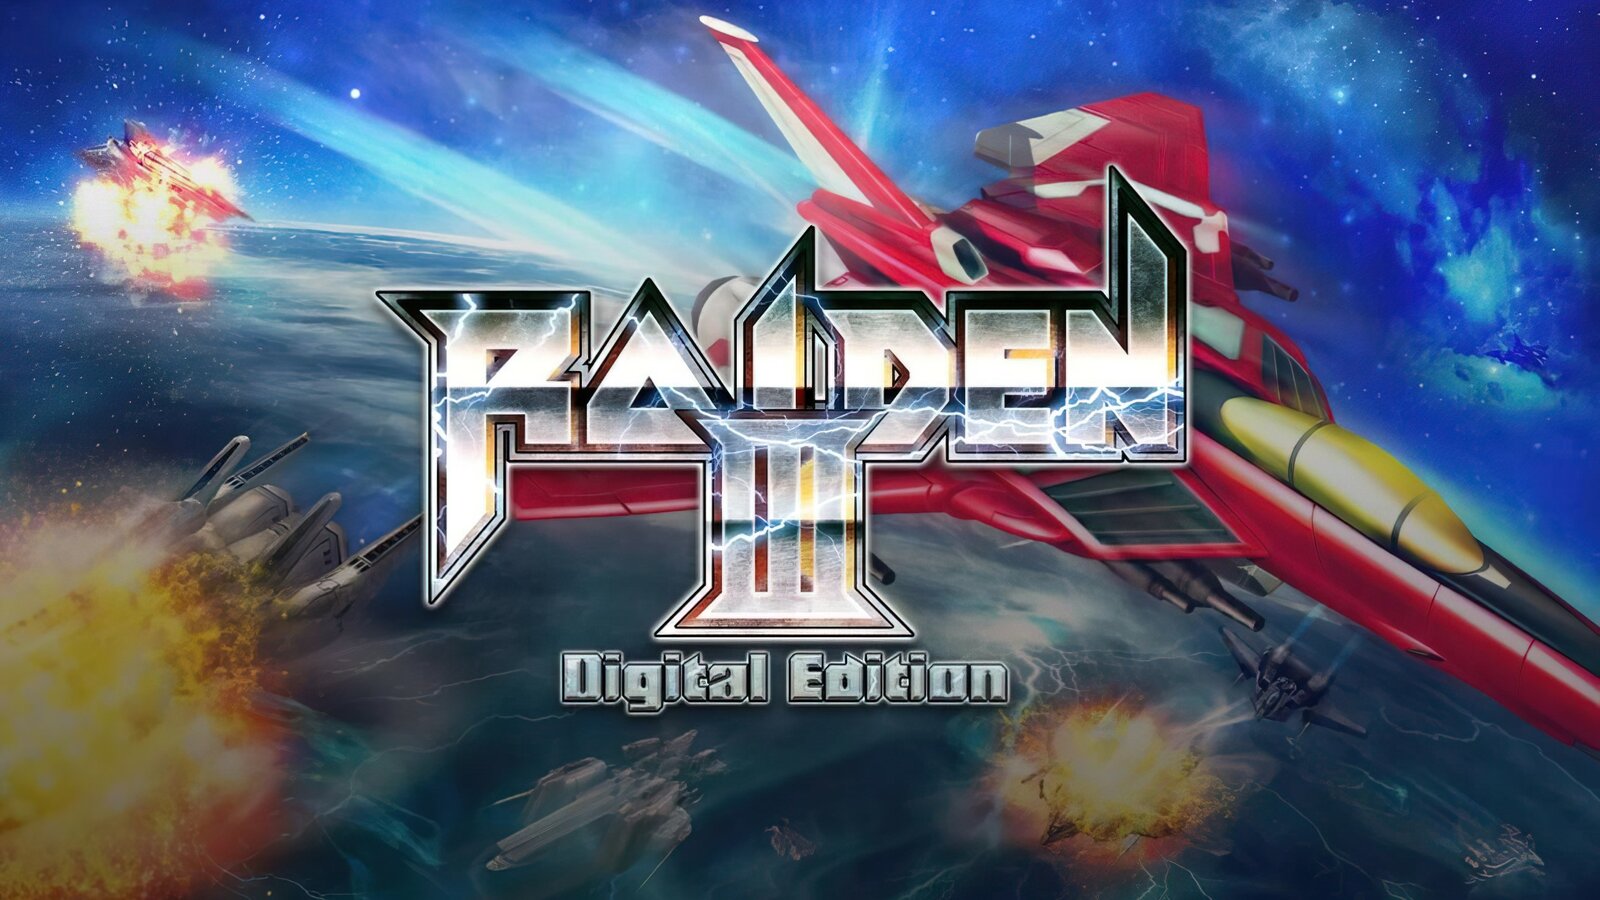 Raiden III - Digital Edition